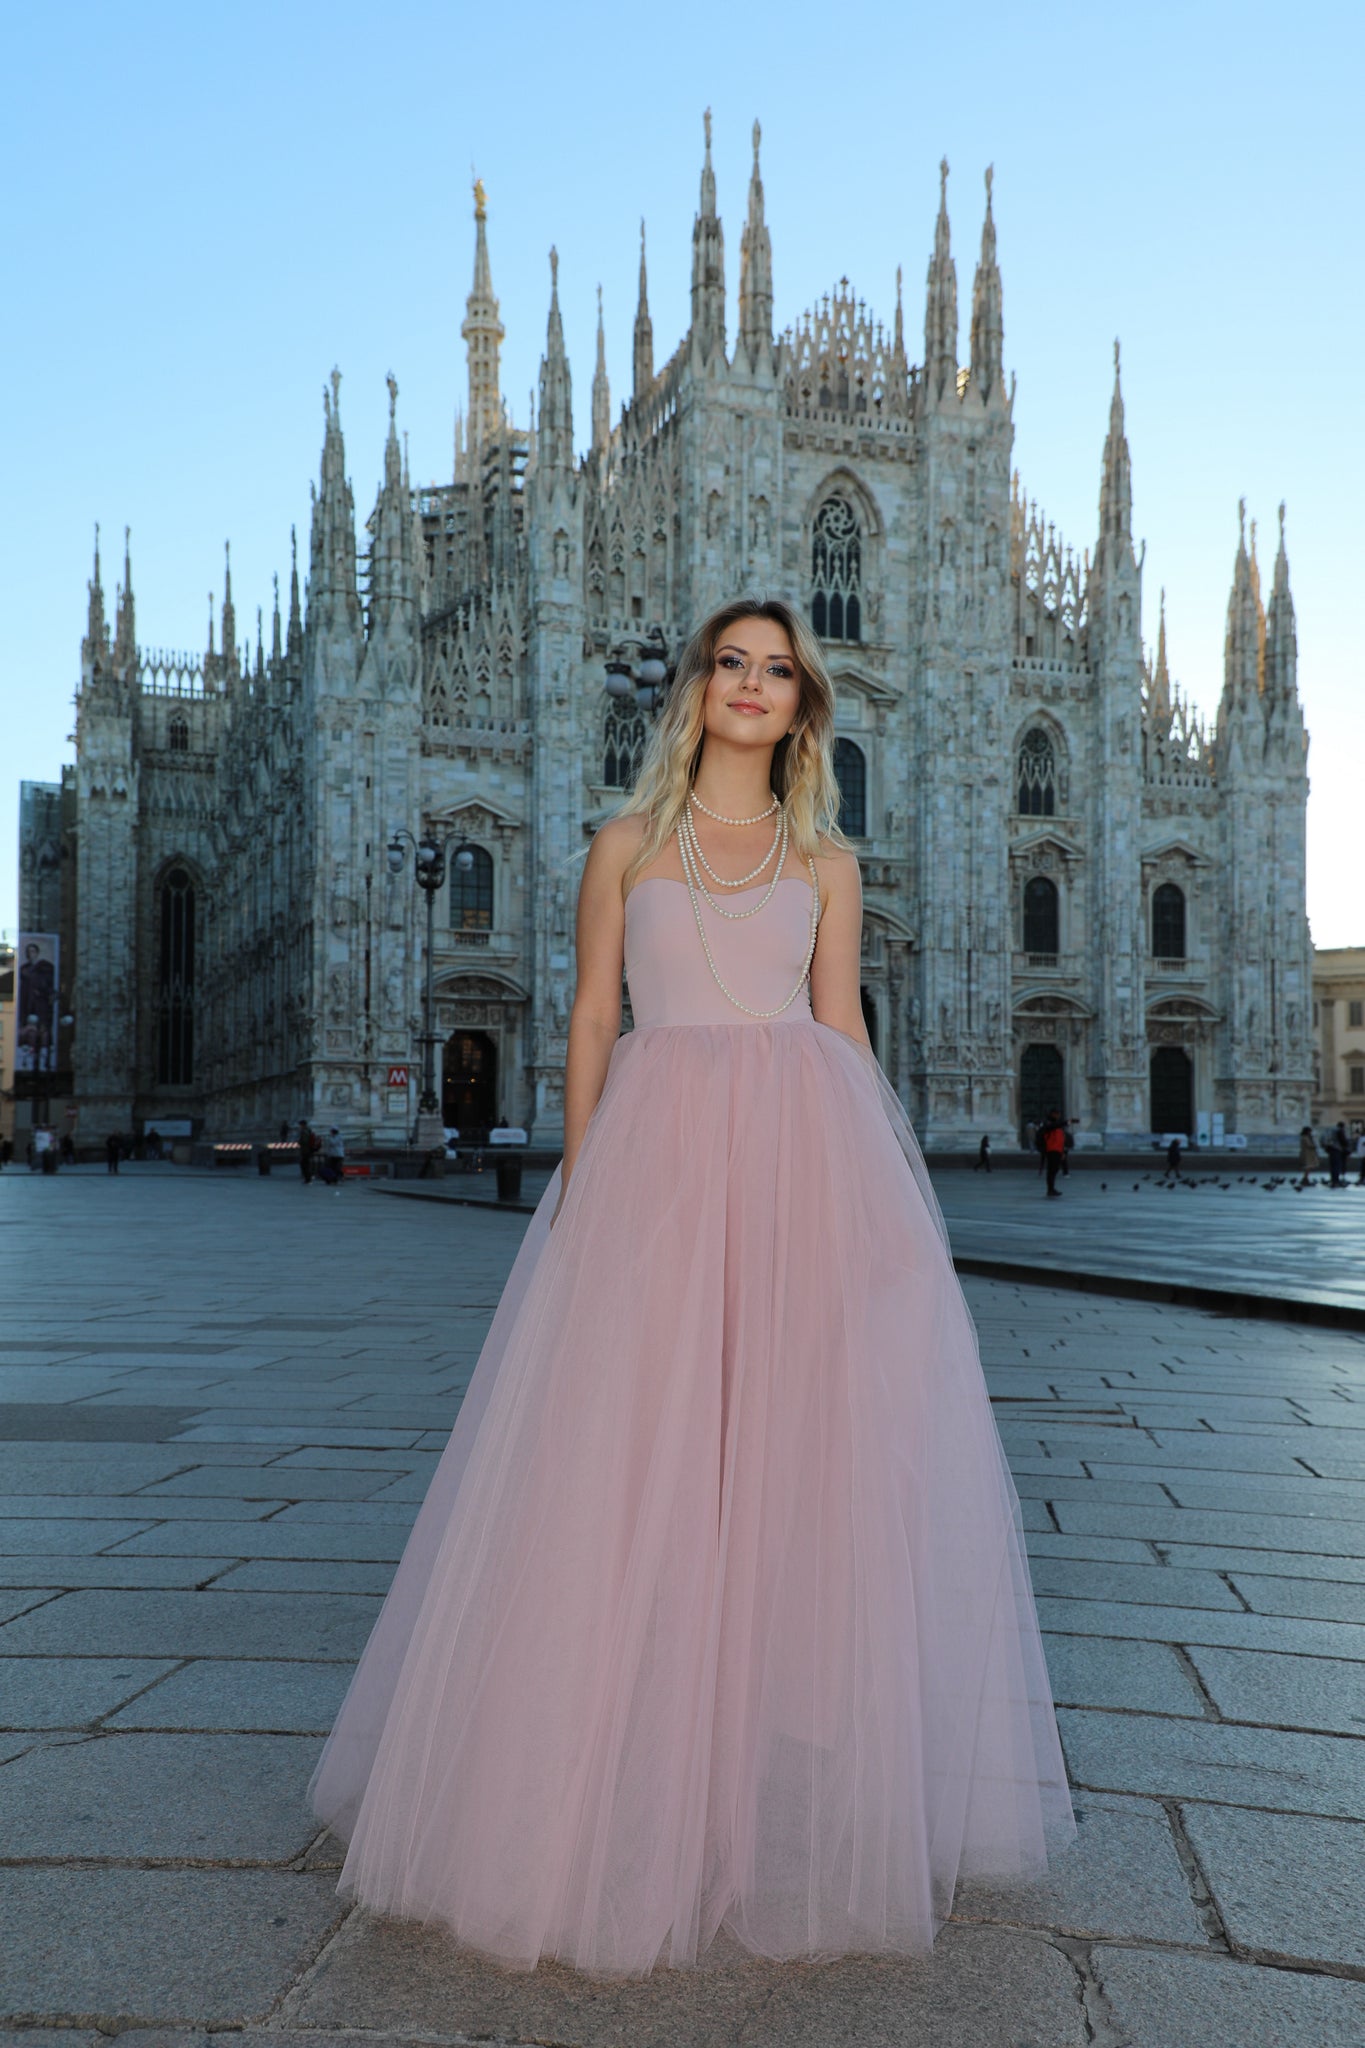 Italian Fashion Women - Who Is She?